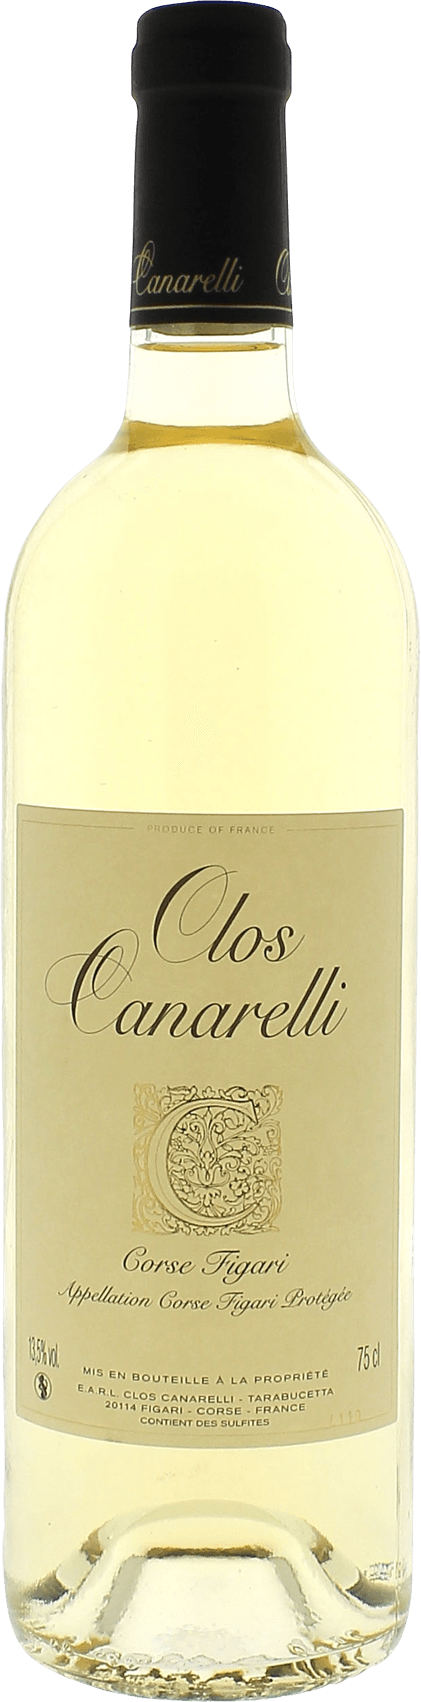 Clos canarelli blanc 2022  AOP Figari, Corse